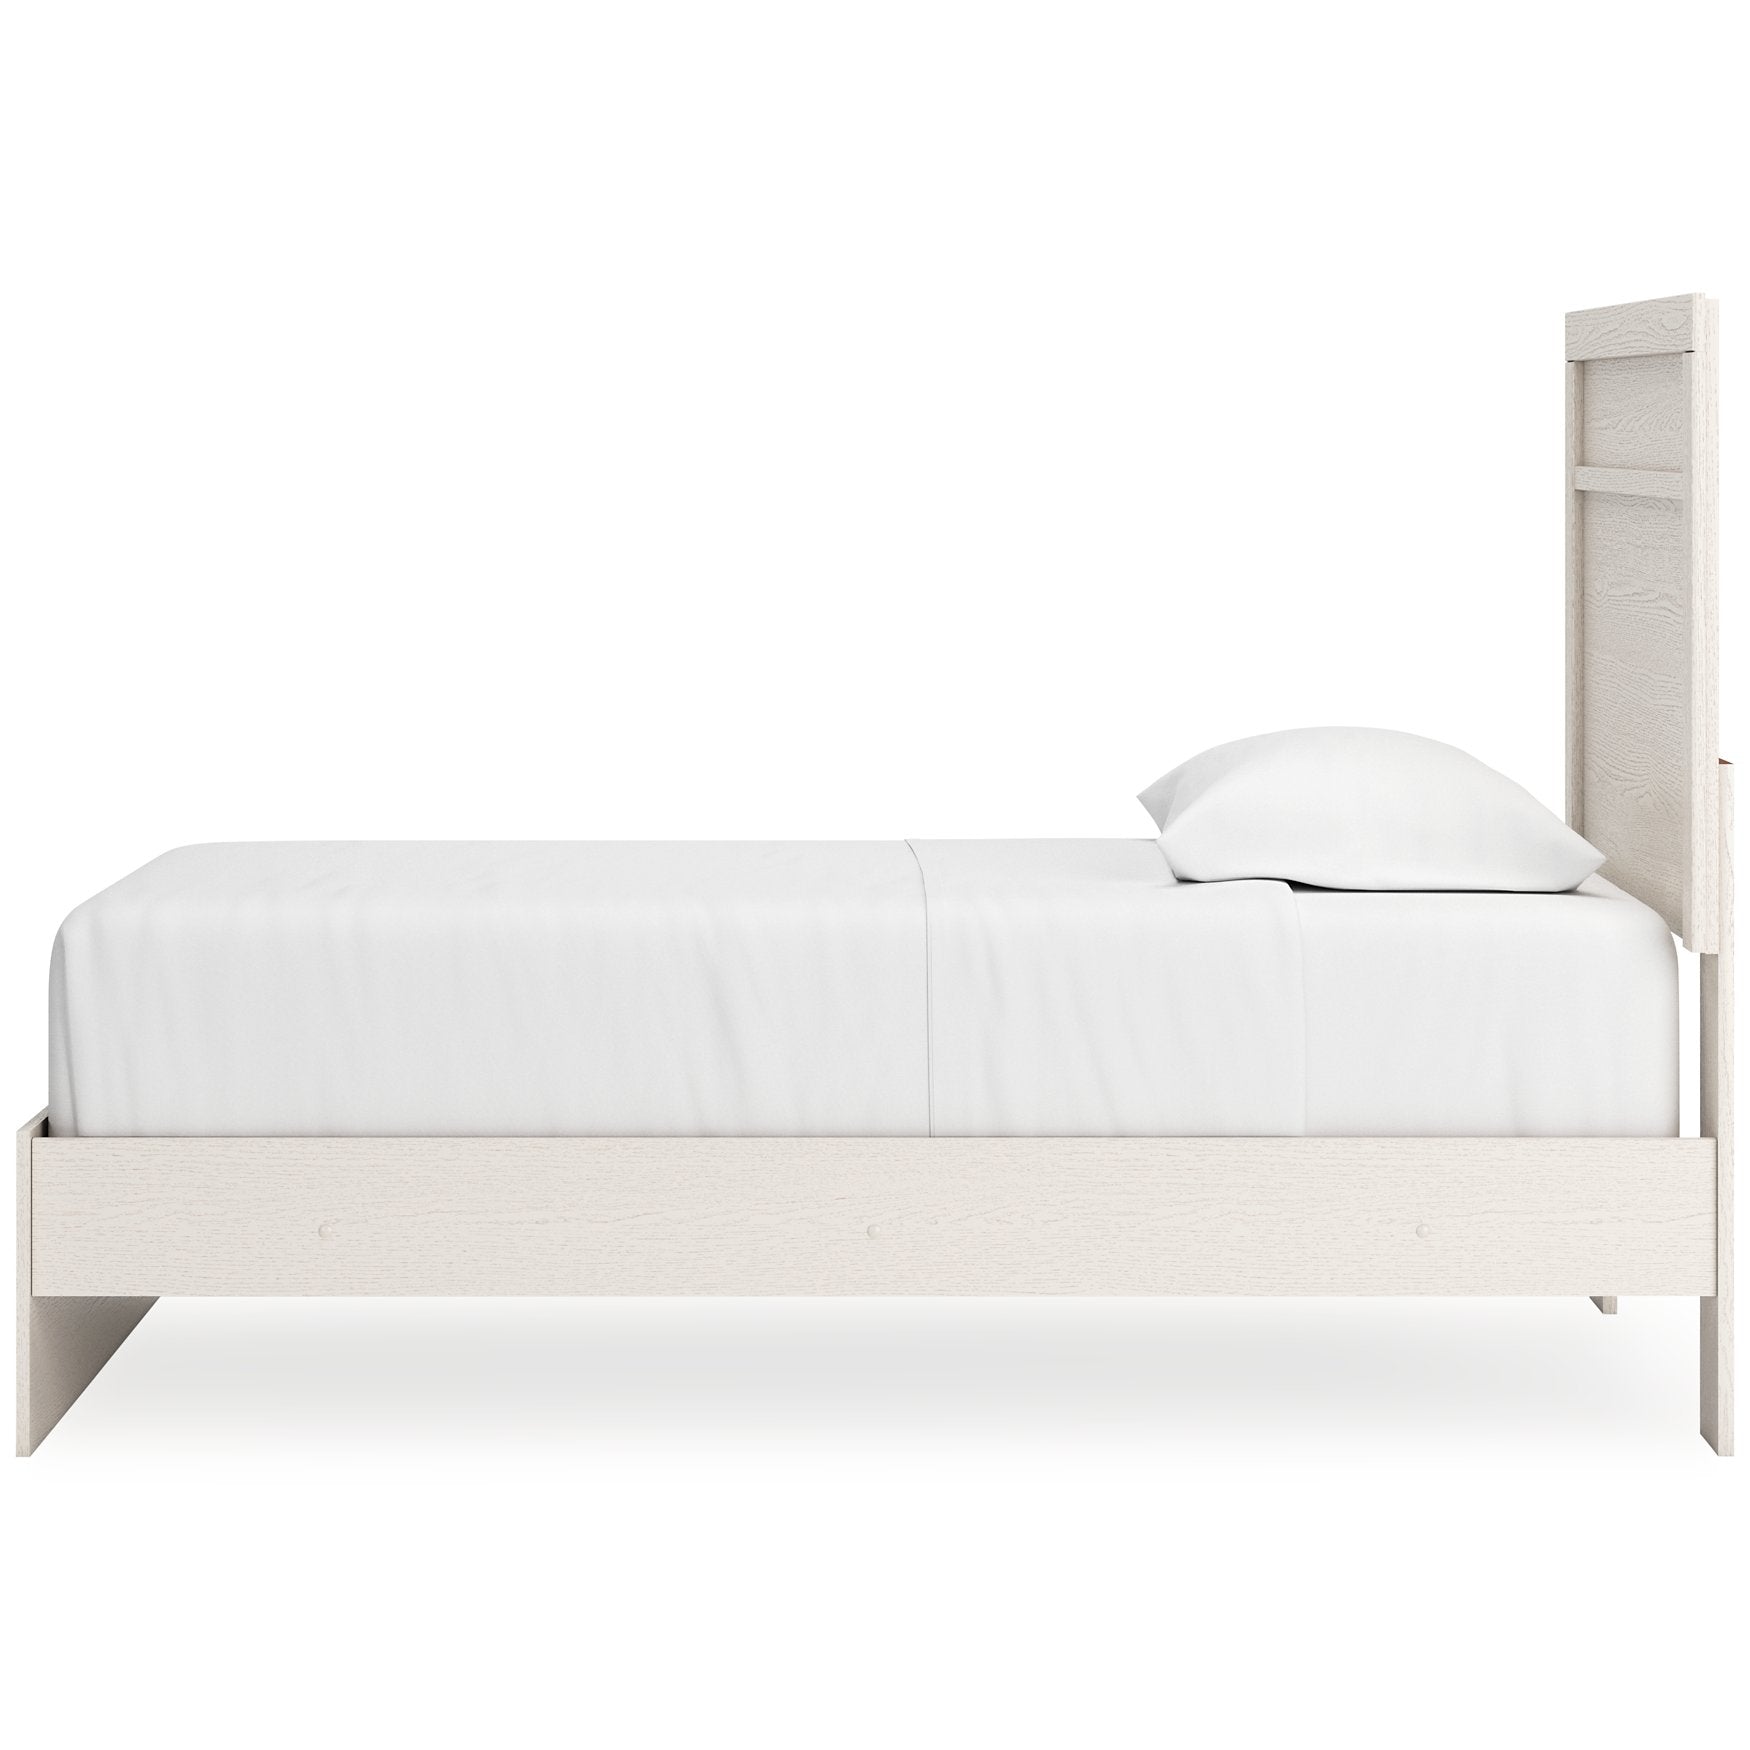 Stelsie Bed - Half Price Furniture